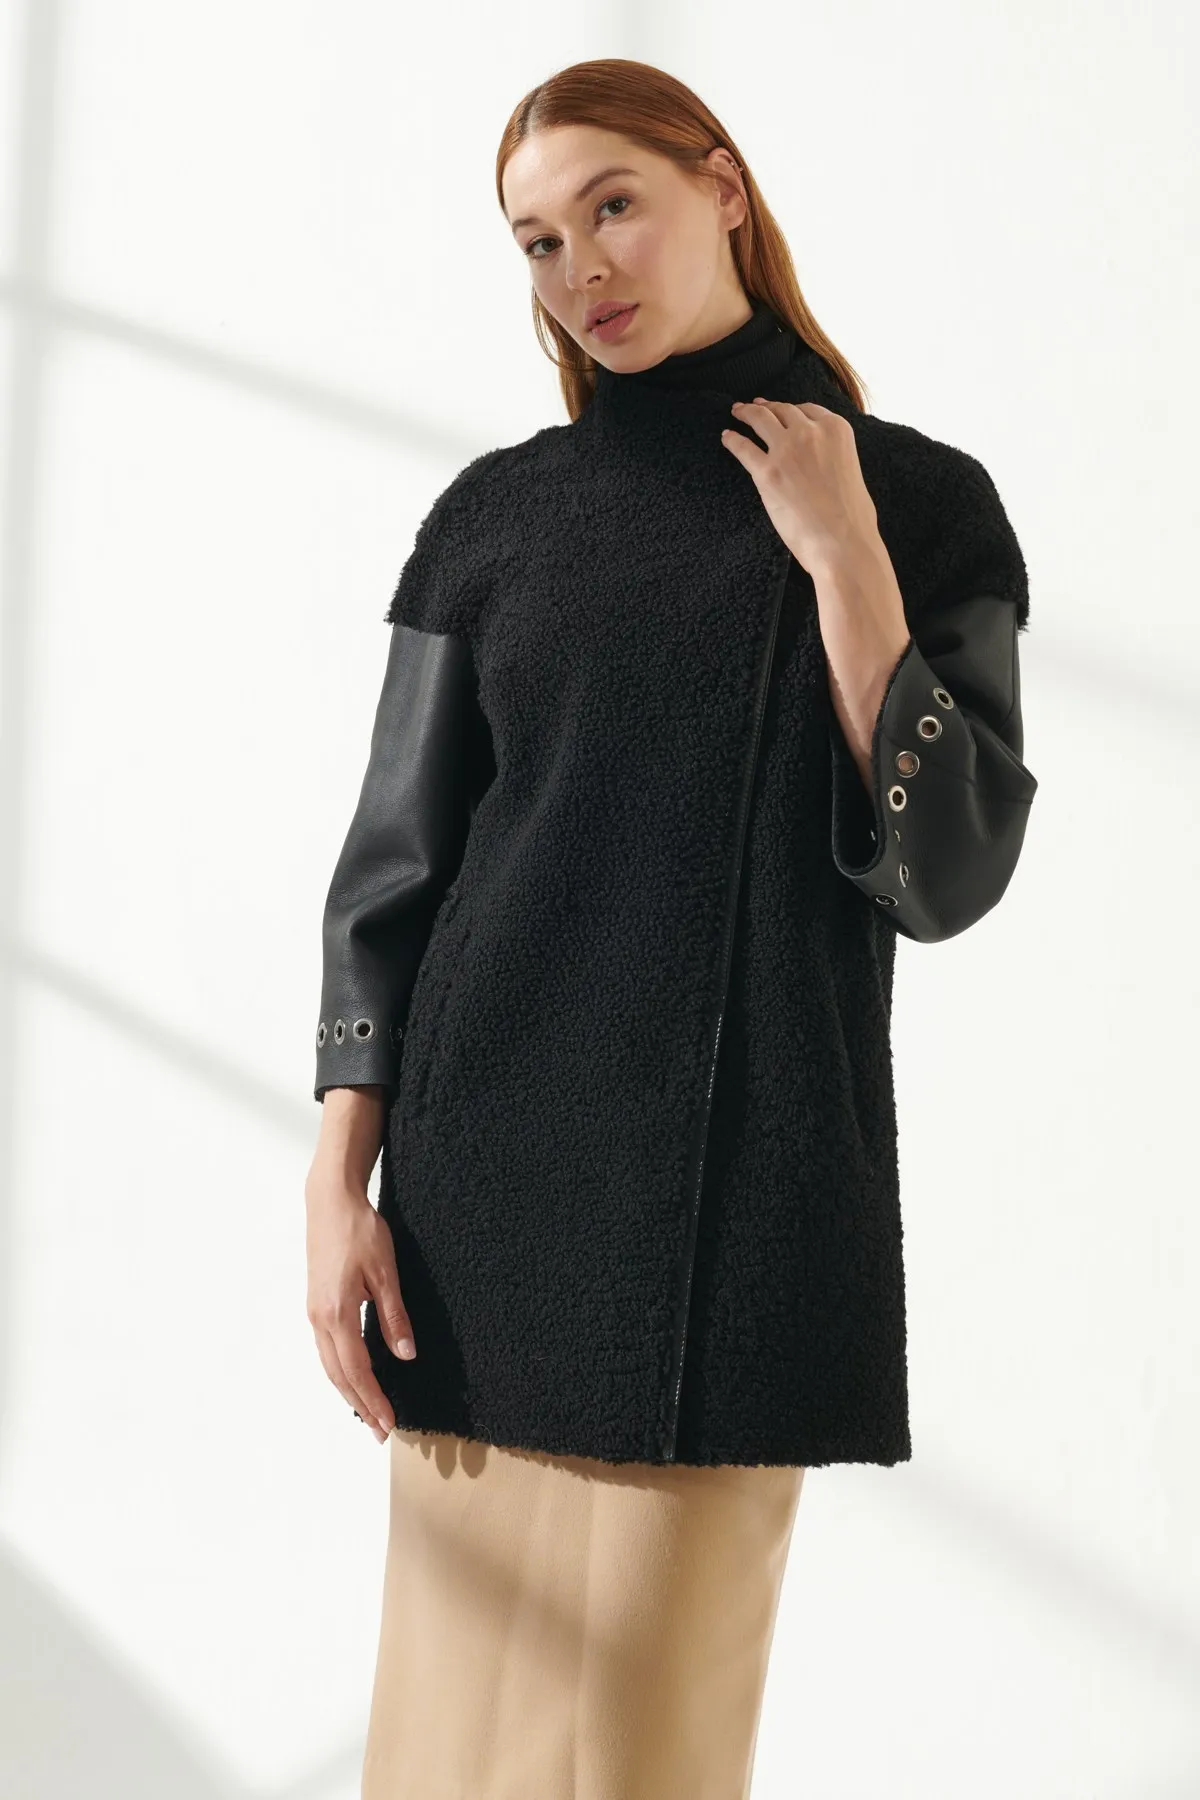 Women's Fur Leather Jacket Winter Warm Coat Design Clothing Products Classic Plush Coat Turkiyede Produced Long Parka Fashion enlarge